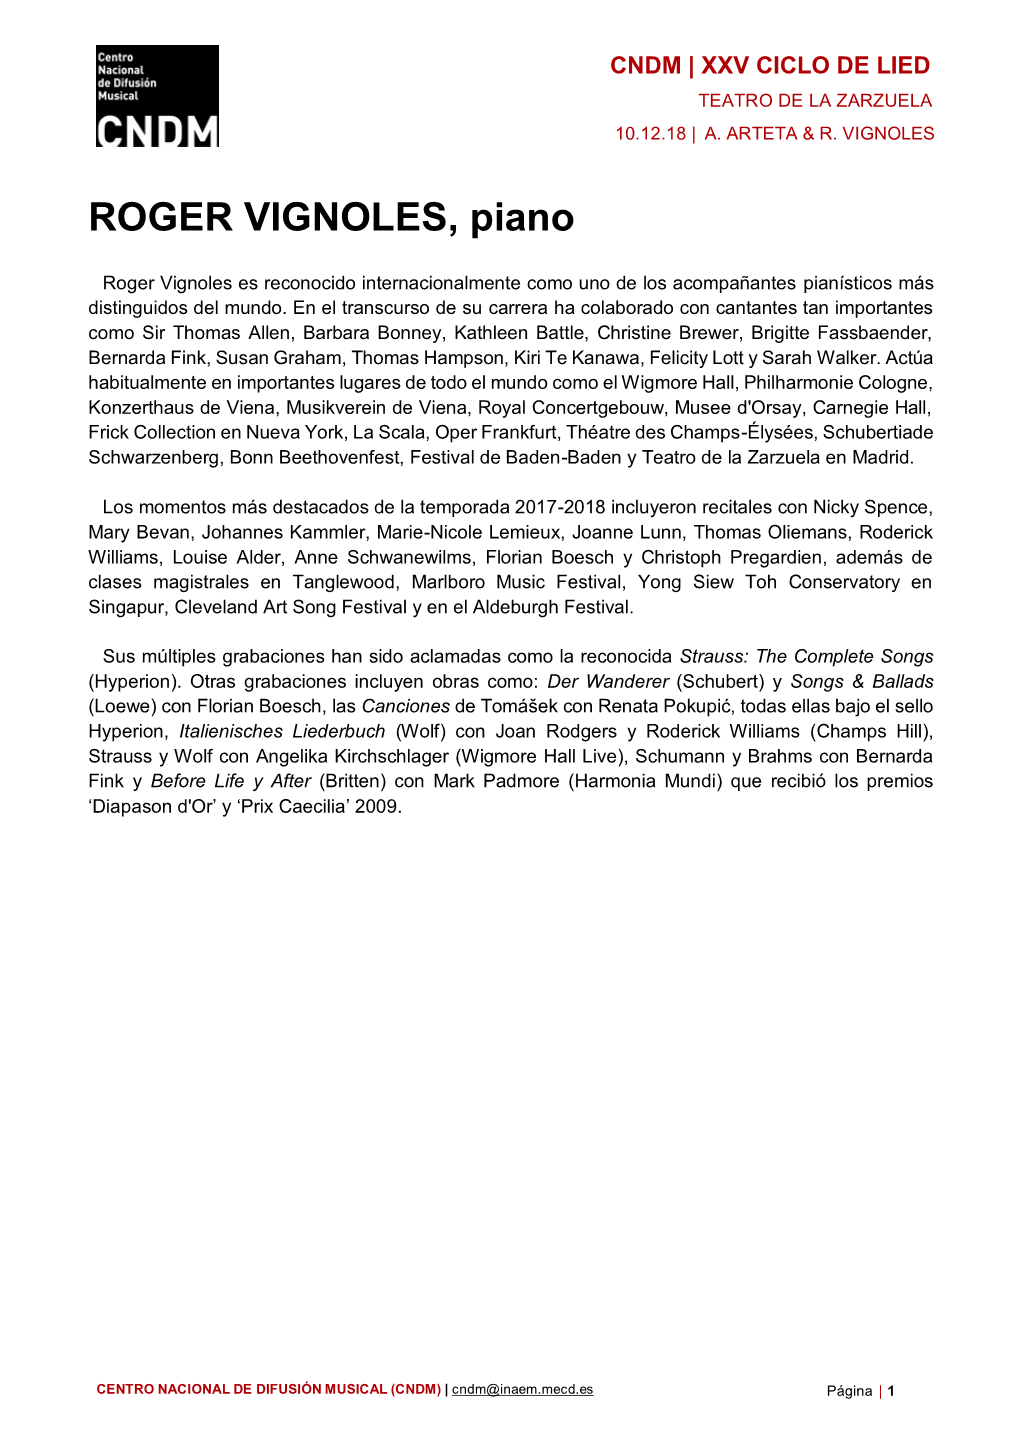 Biografía Roger Vignoles